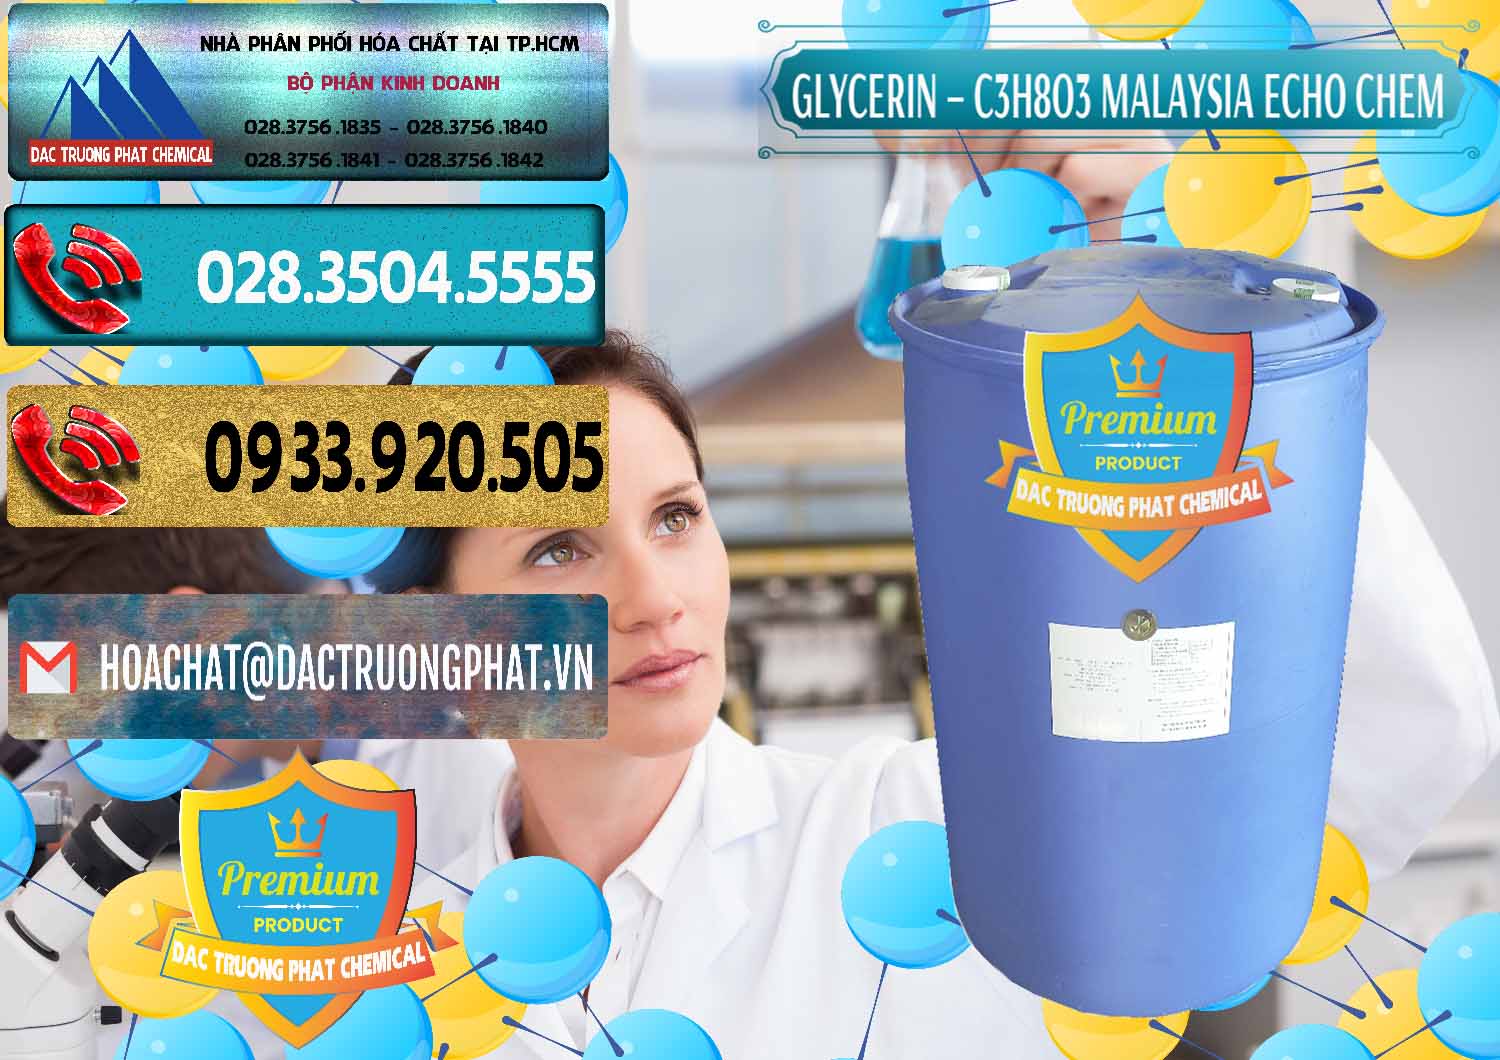 Cung cấp - bán Glycerin – C3H8O3 99.7% Echo Chem Malaysia - 0273 - Nơi chuyên phân phối - bán hóa chất tại TP.HCM - hoachatdetnhuom.com